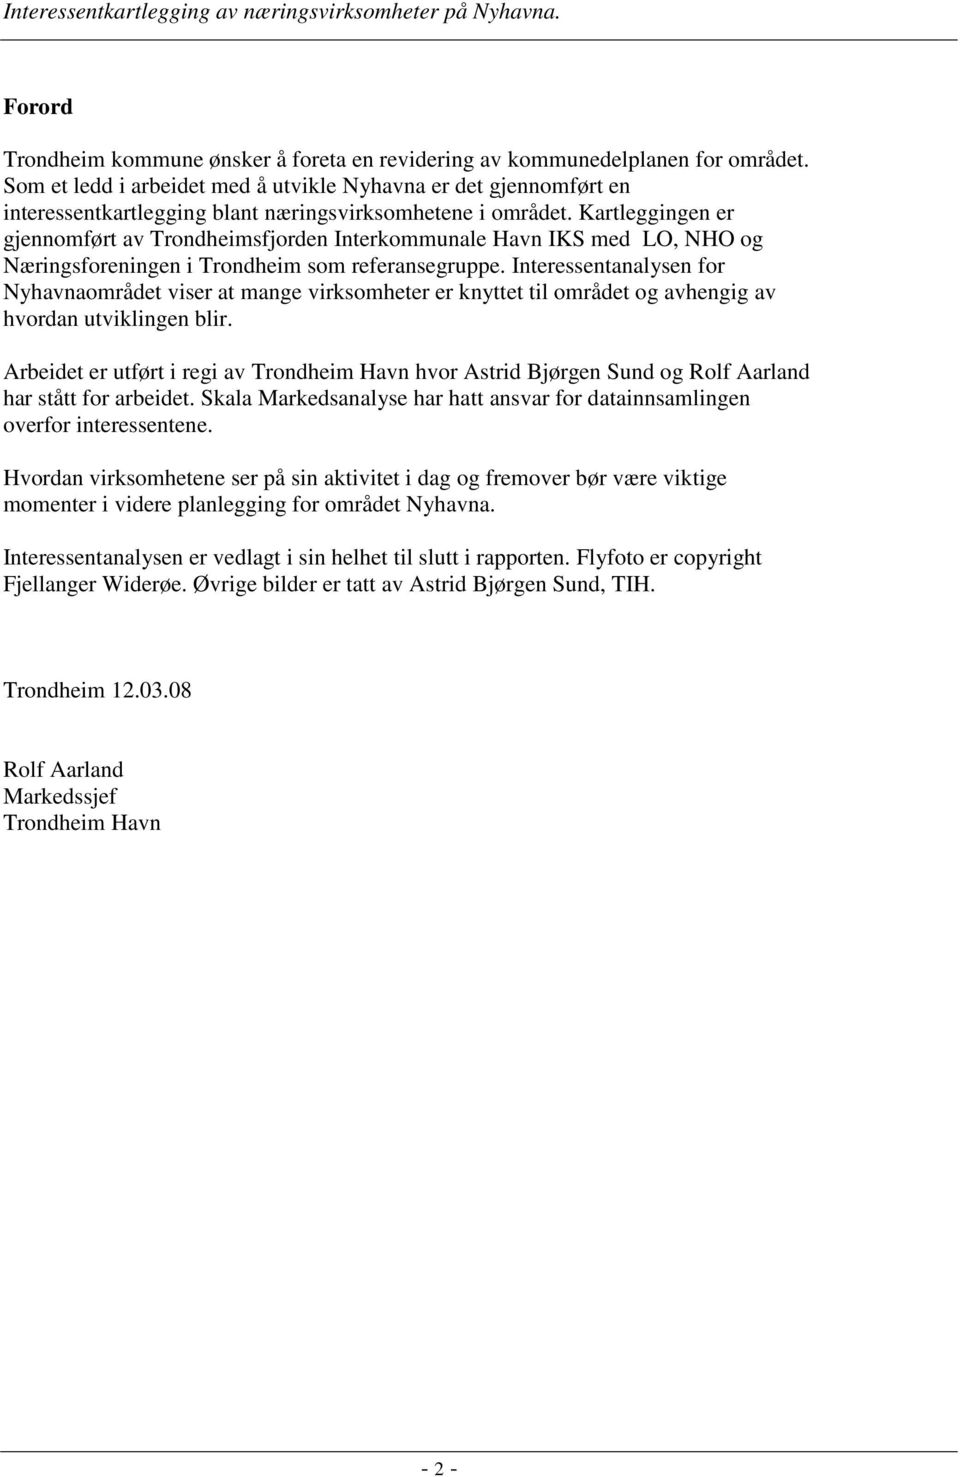 Kartleggingen er gjennomført av Trondheimsfjorden Interkommunale Havn IKS med LO, NHO og Næringsforeningen i Trondheim som referansegruppe.